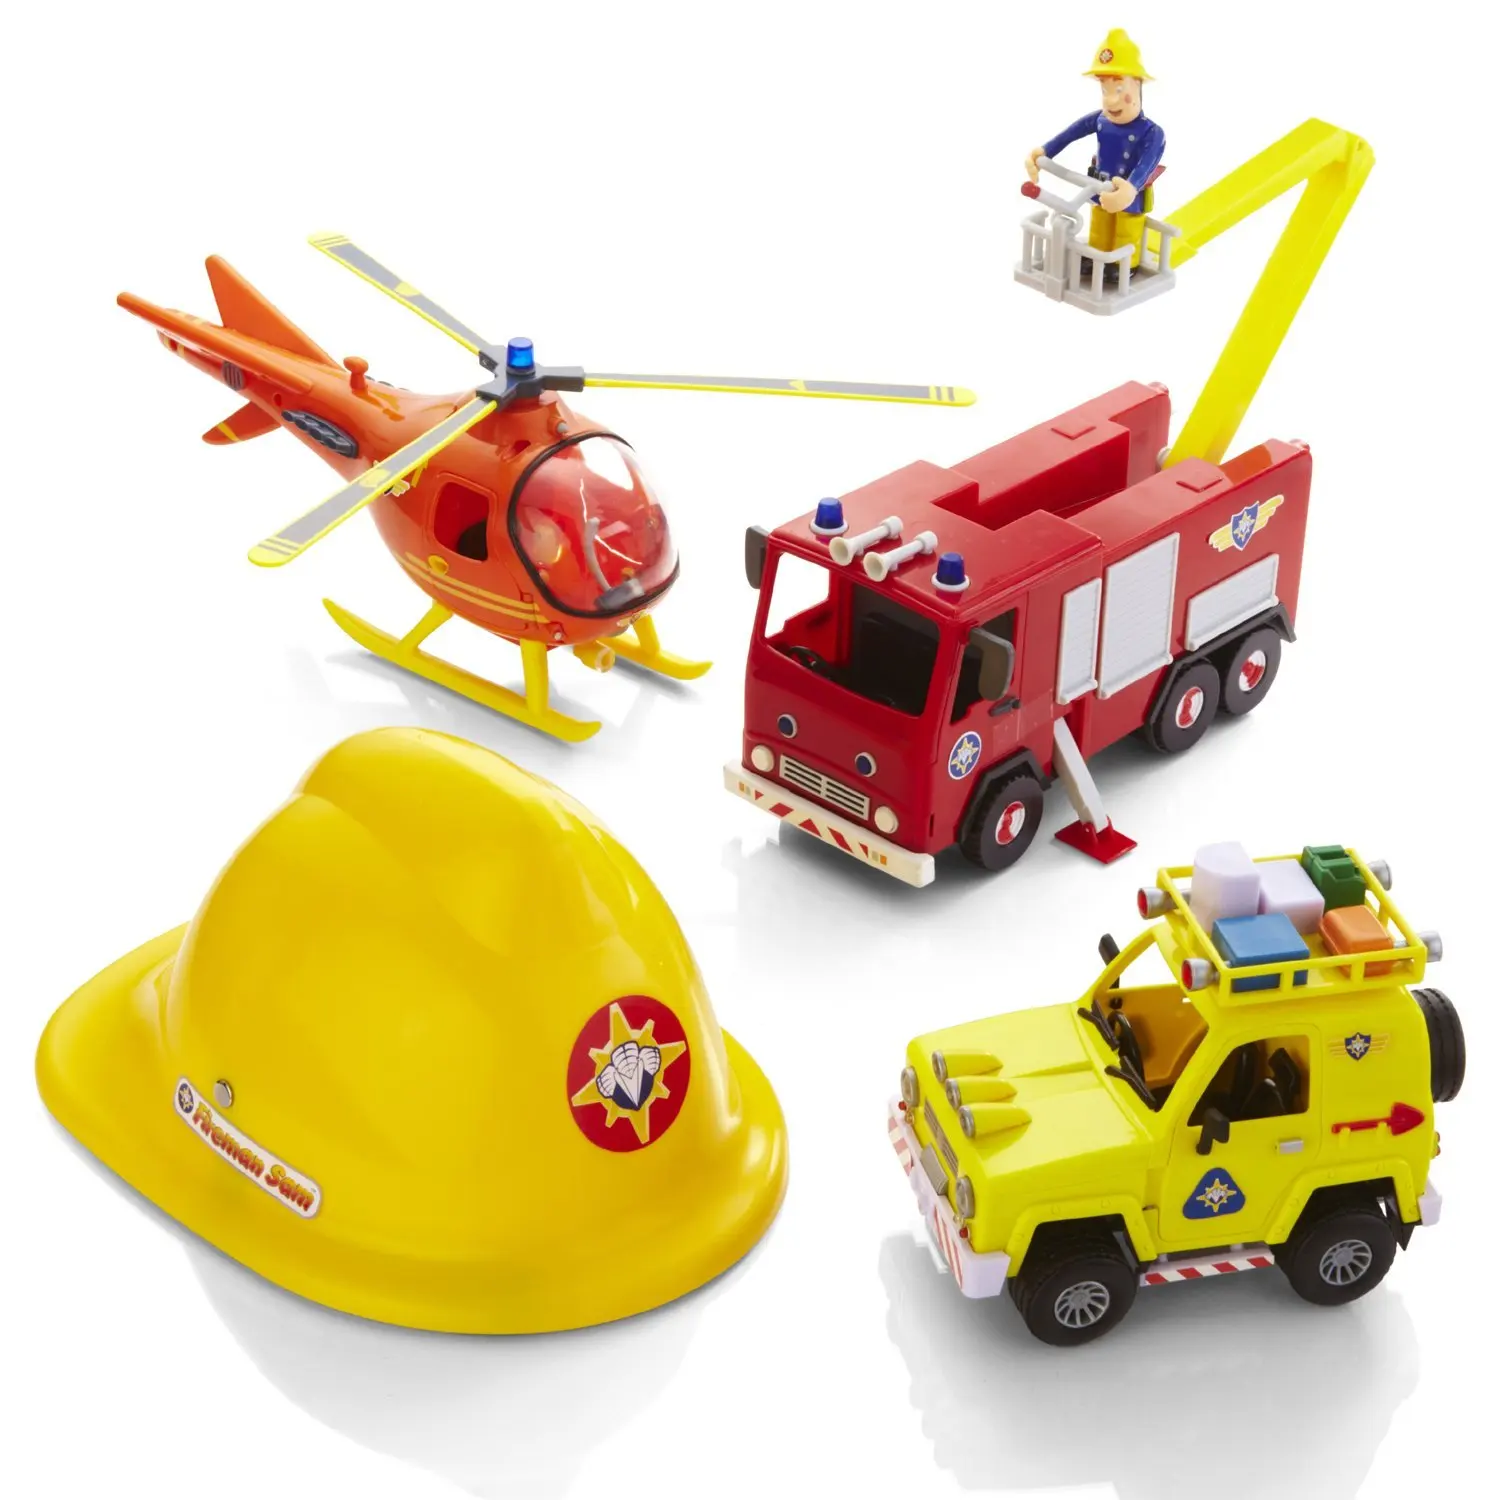 Купить игрушку пожарный. Пожарный Сэм игрушки Юпитер. Пожарный Сэм игрушки ю. Пожарный Сэм игрушки вертолет. Феникс игрушки пожарный Сэм.